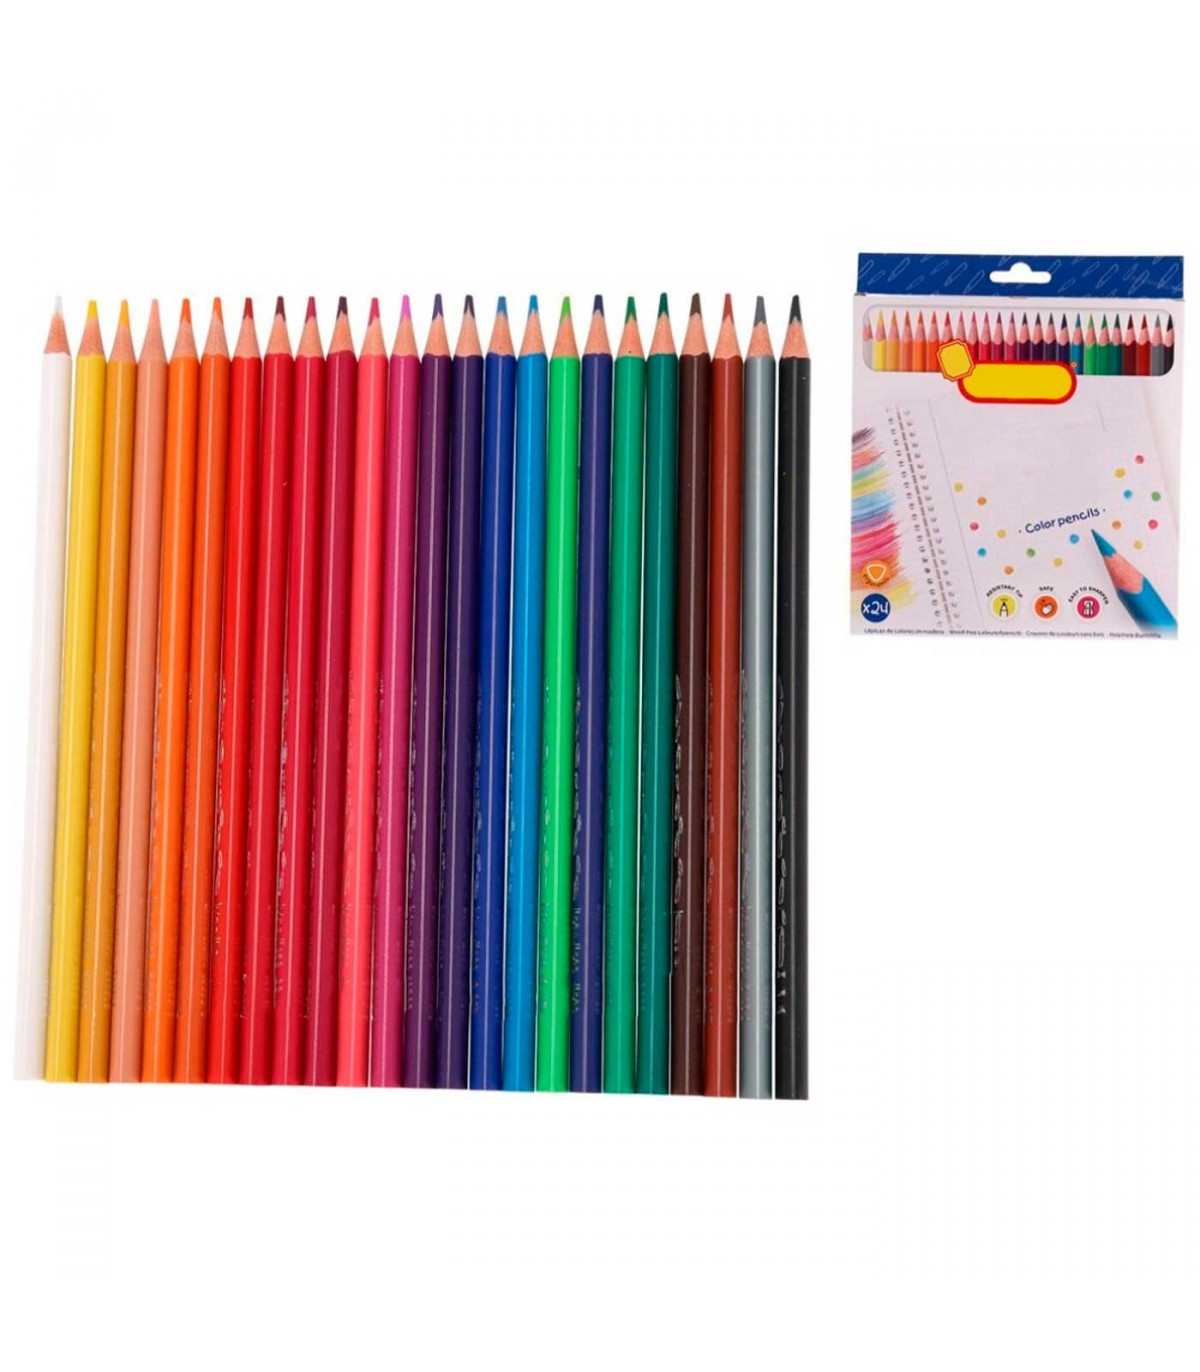 https://tradineur.com/62709-superlarge_default/tradineur--caja-de-24-lapices-de-colores-para-ninos-material-escolar-colores-vivos-surtidos-ideal-para-colorear-y-dibujar.jpg